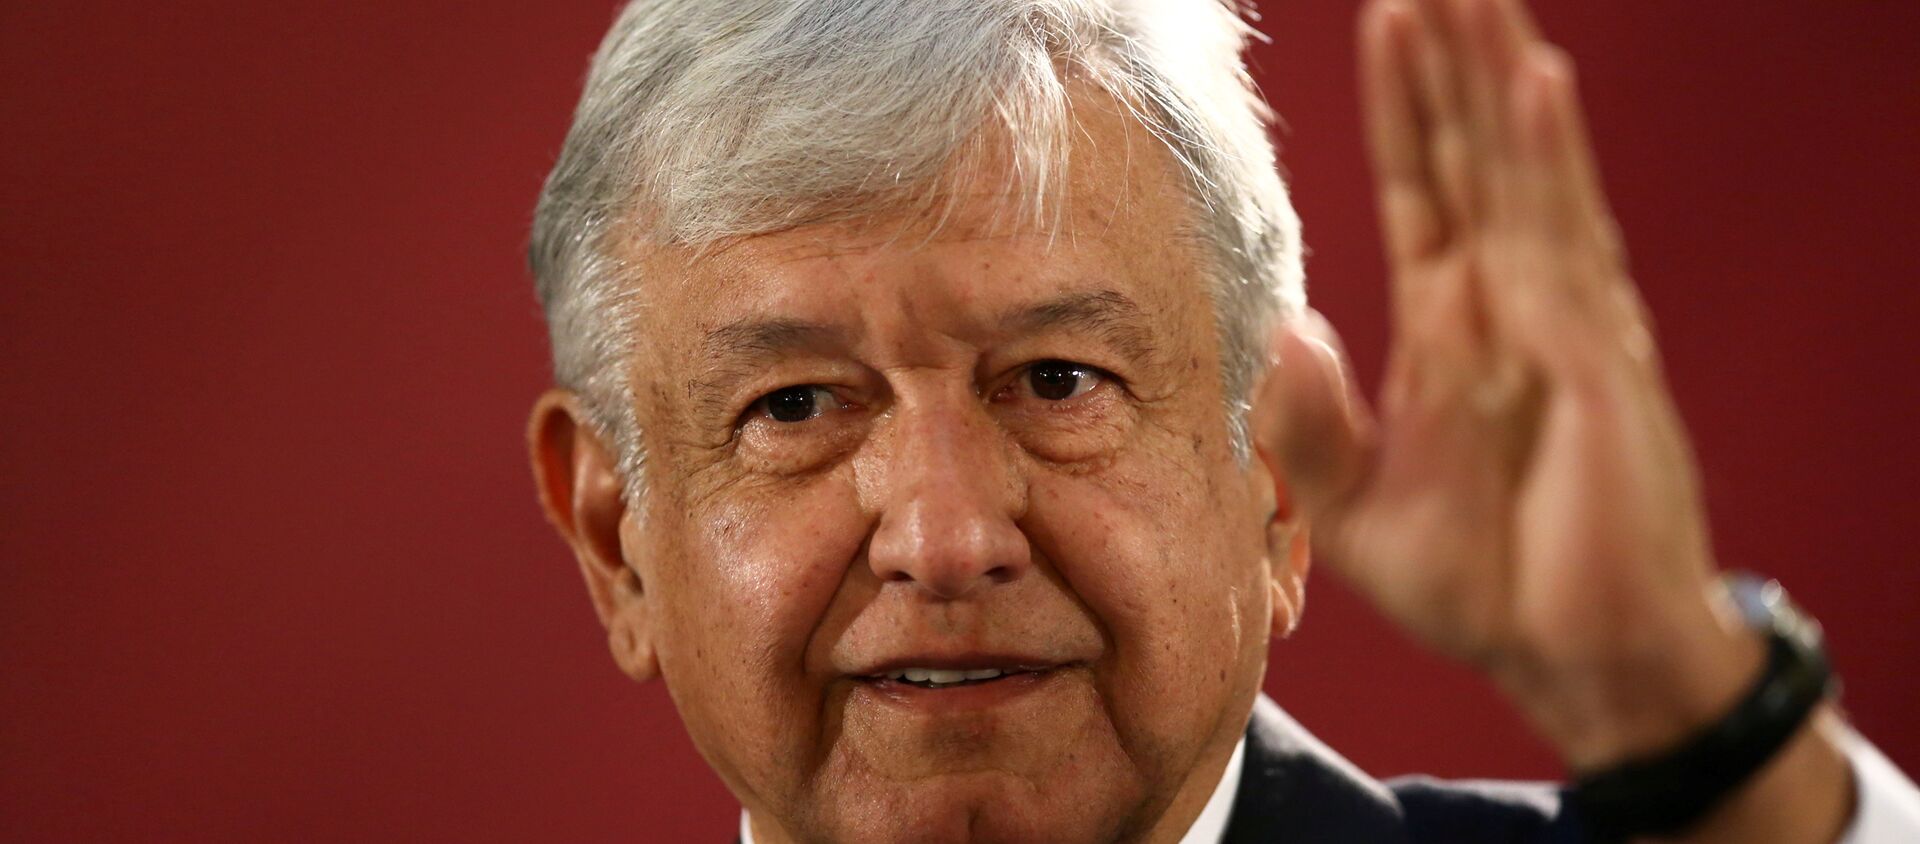 Andrés Manuel López Obrador, presidente de México - Sputnik Mundo, 1920, 18.12.2018